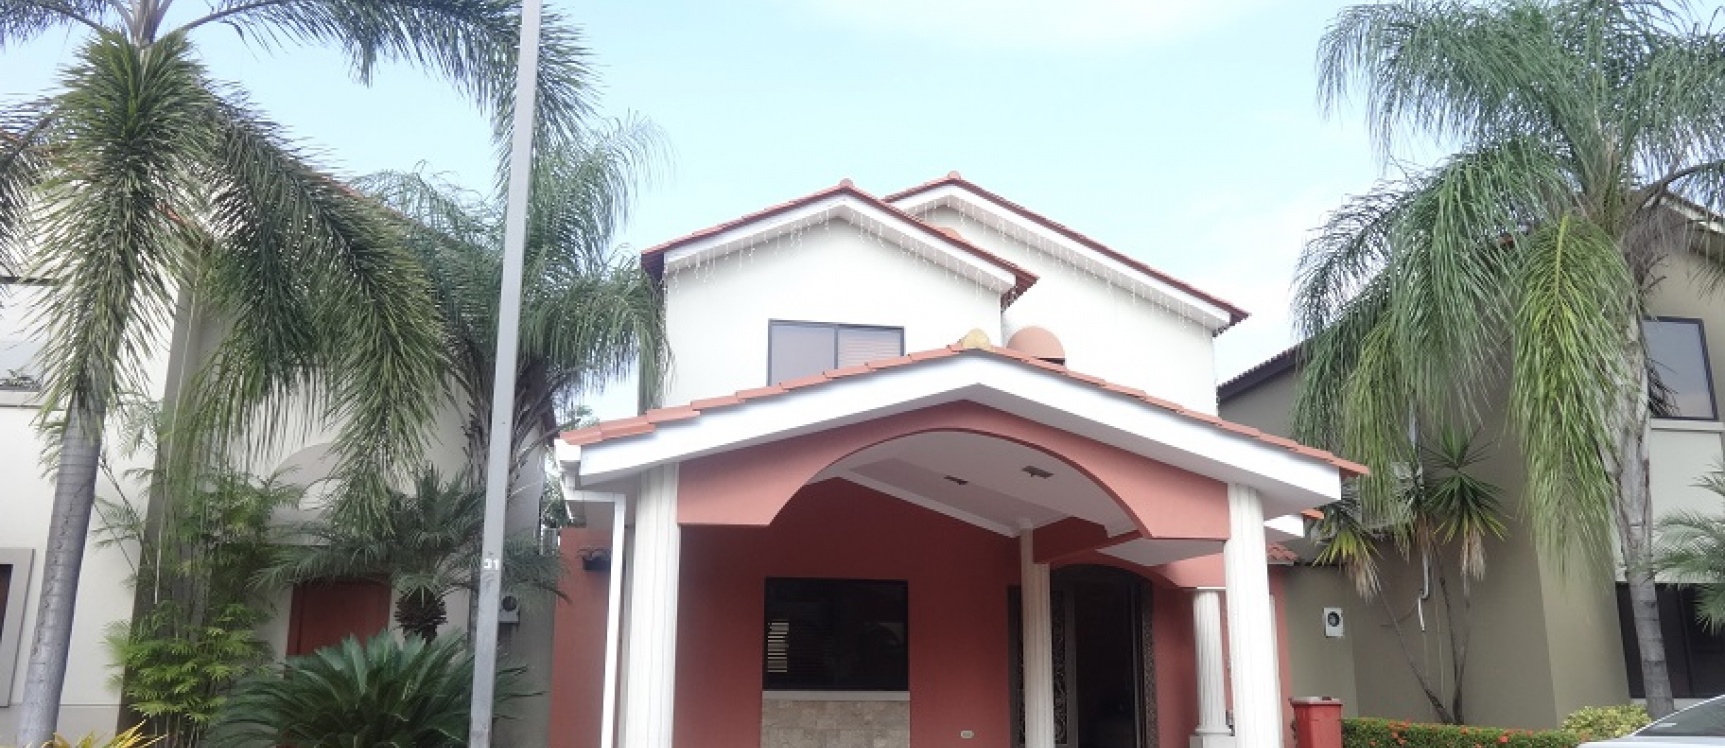 GeoBienes - Ciudad Celeste en venta casa amoblada y decorada en Samborondón - Plusvalia Guayaquil Casas de venta y alquiler Inmobiliaria Ecuador